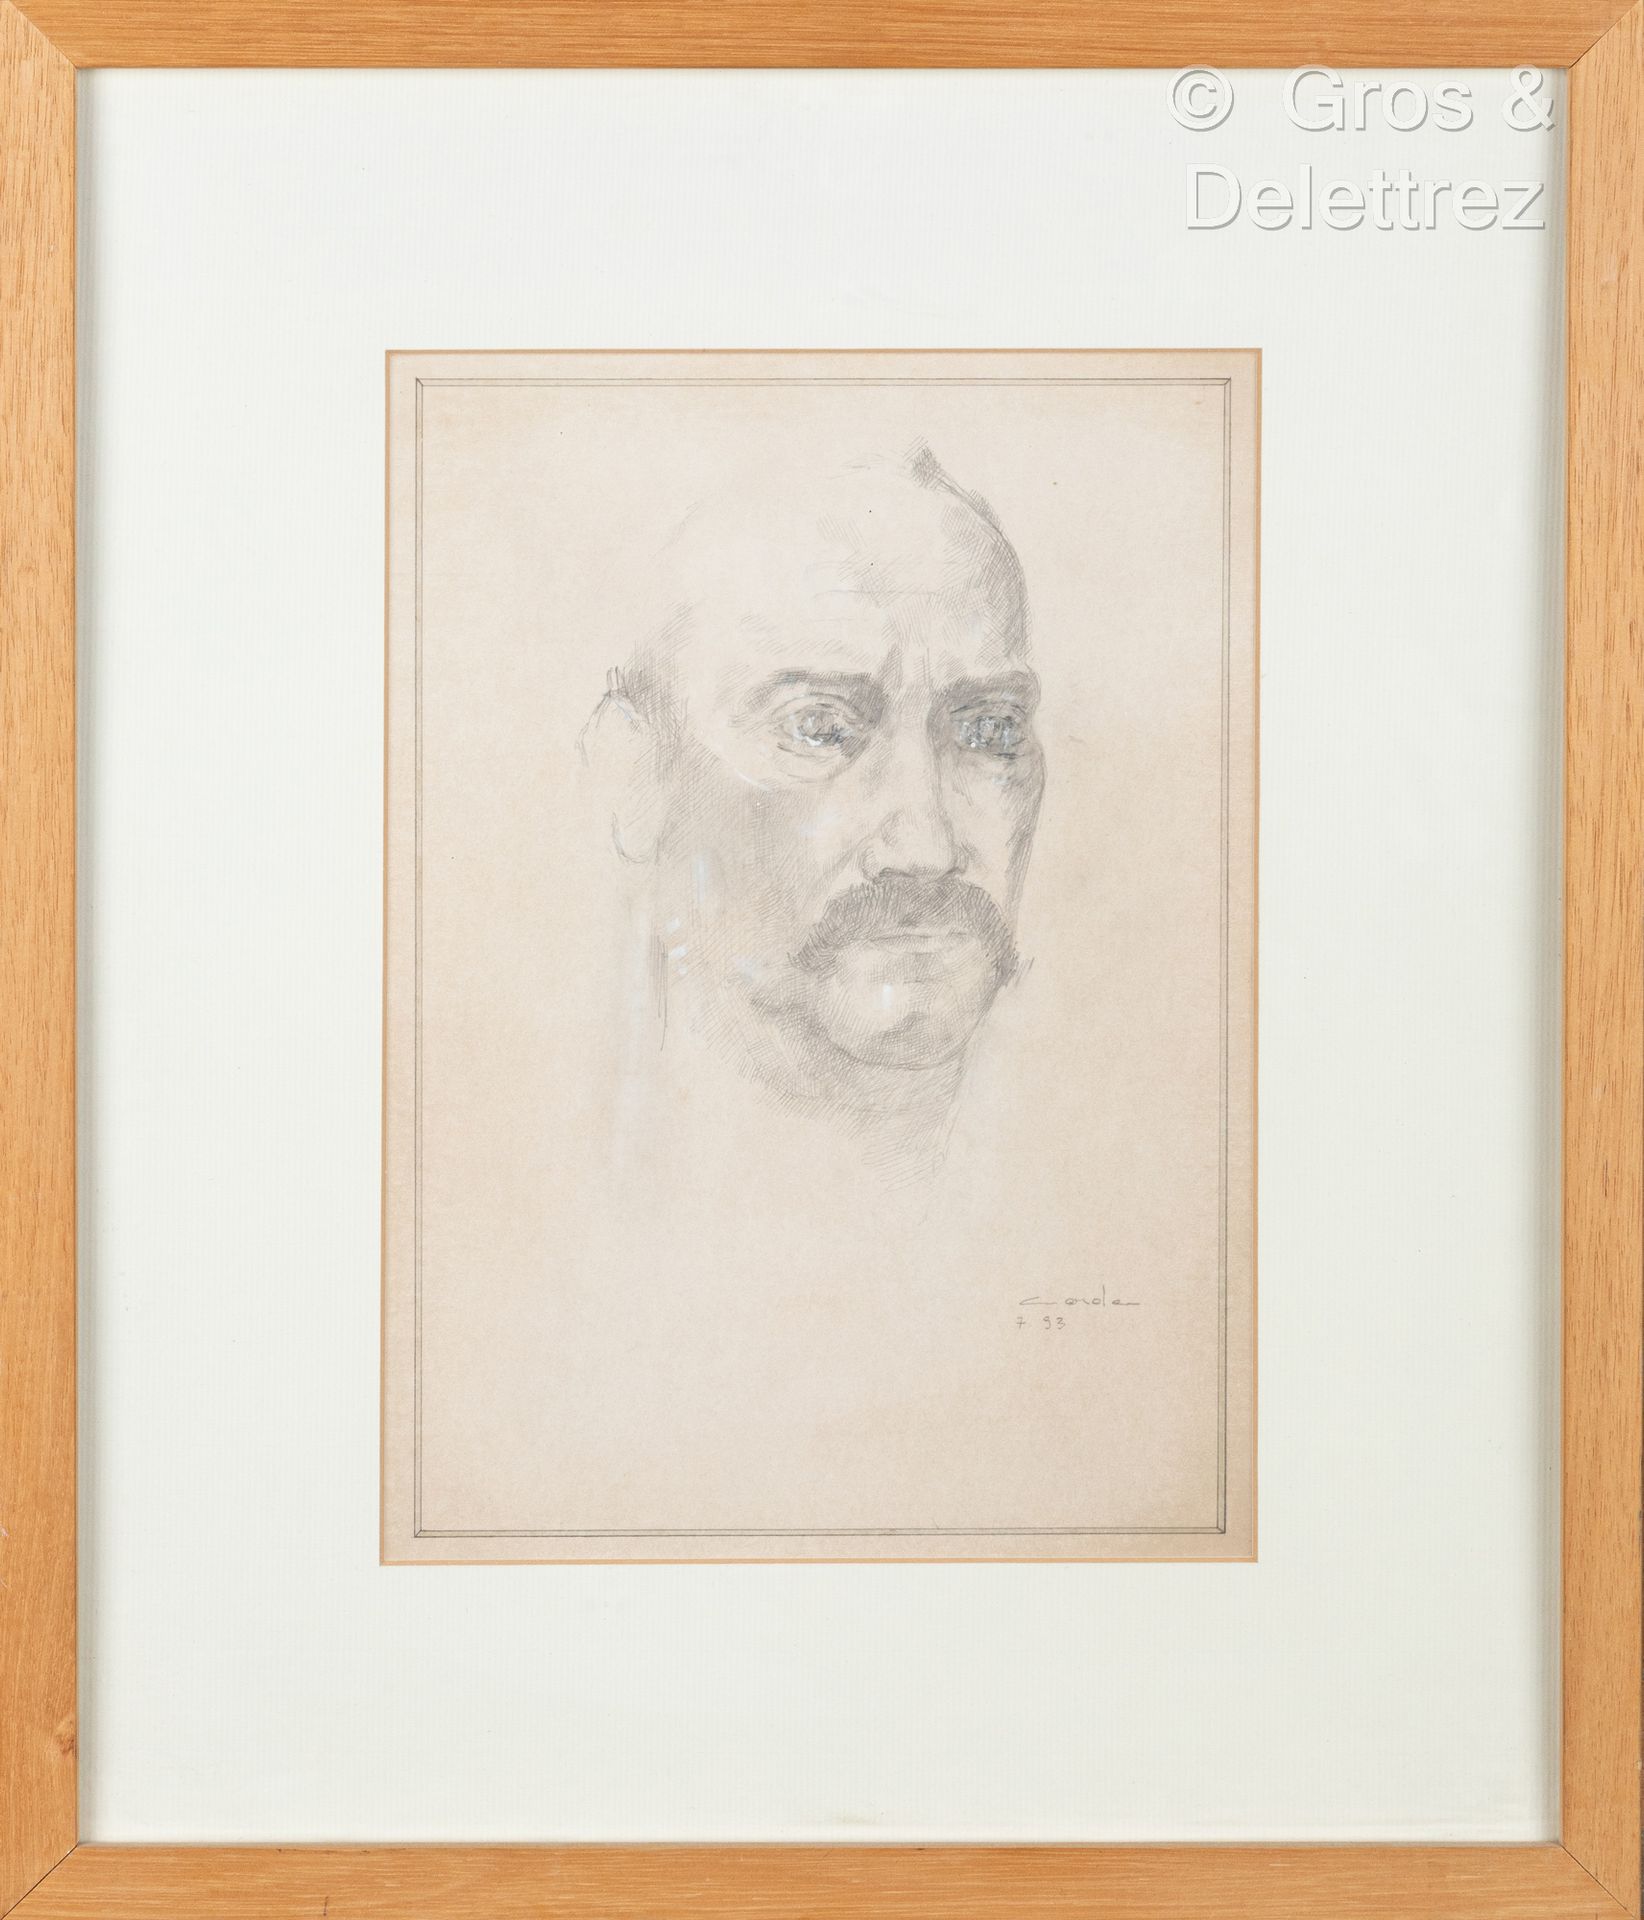 Null (E) 毛罗-科达(生于1960年)

有小胡子的人的肖像

纸上石墨和粉笔高光，右下方有签名和日期93

31 x 22 cm 正在观看